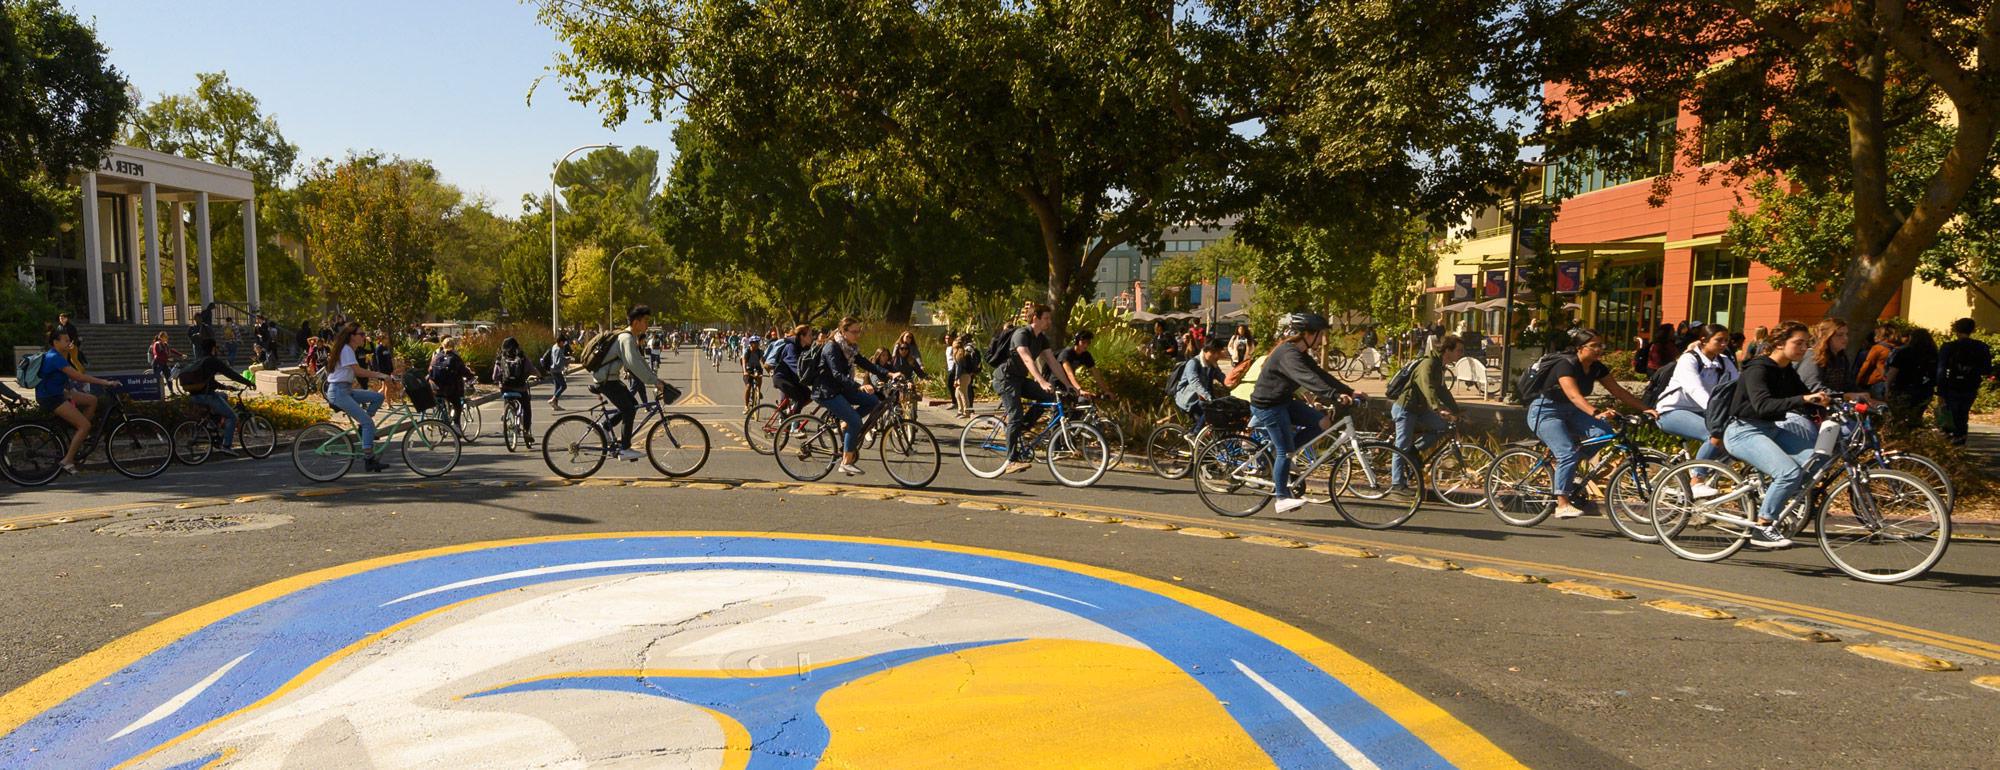 学生们骑着自行车绕着自行车圈